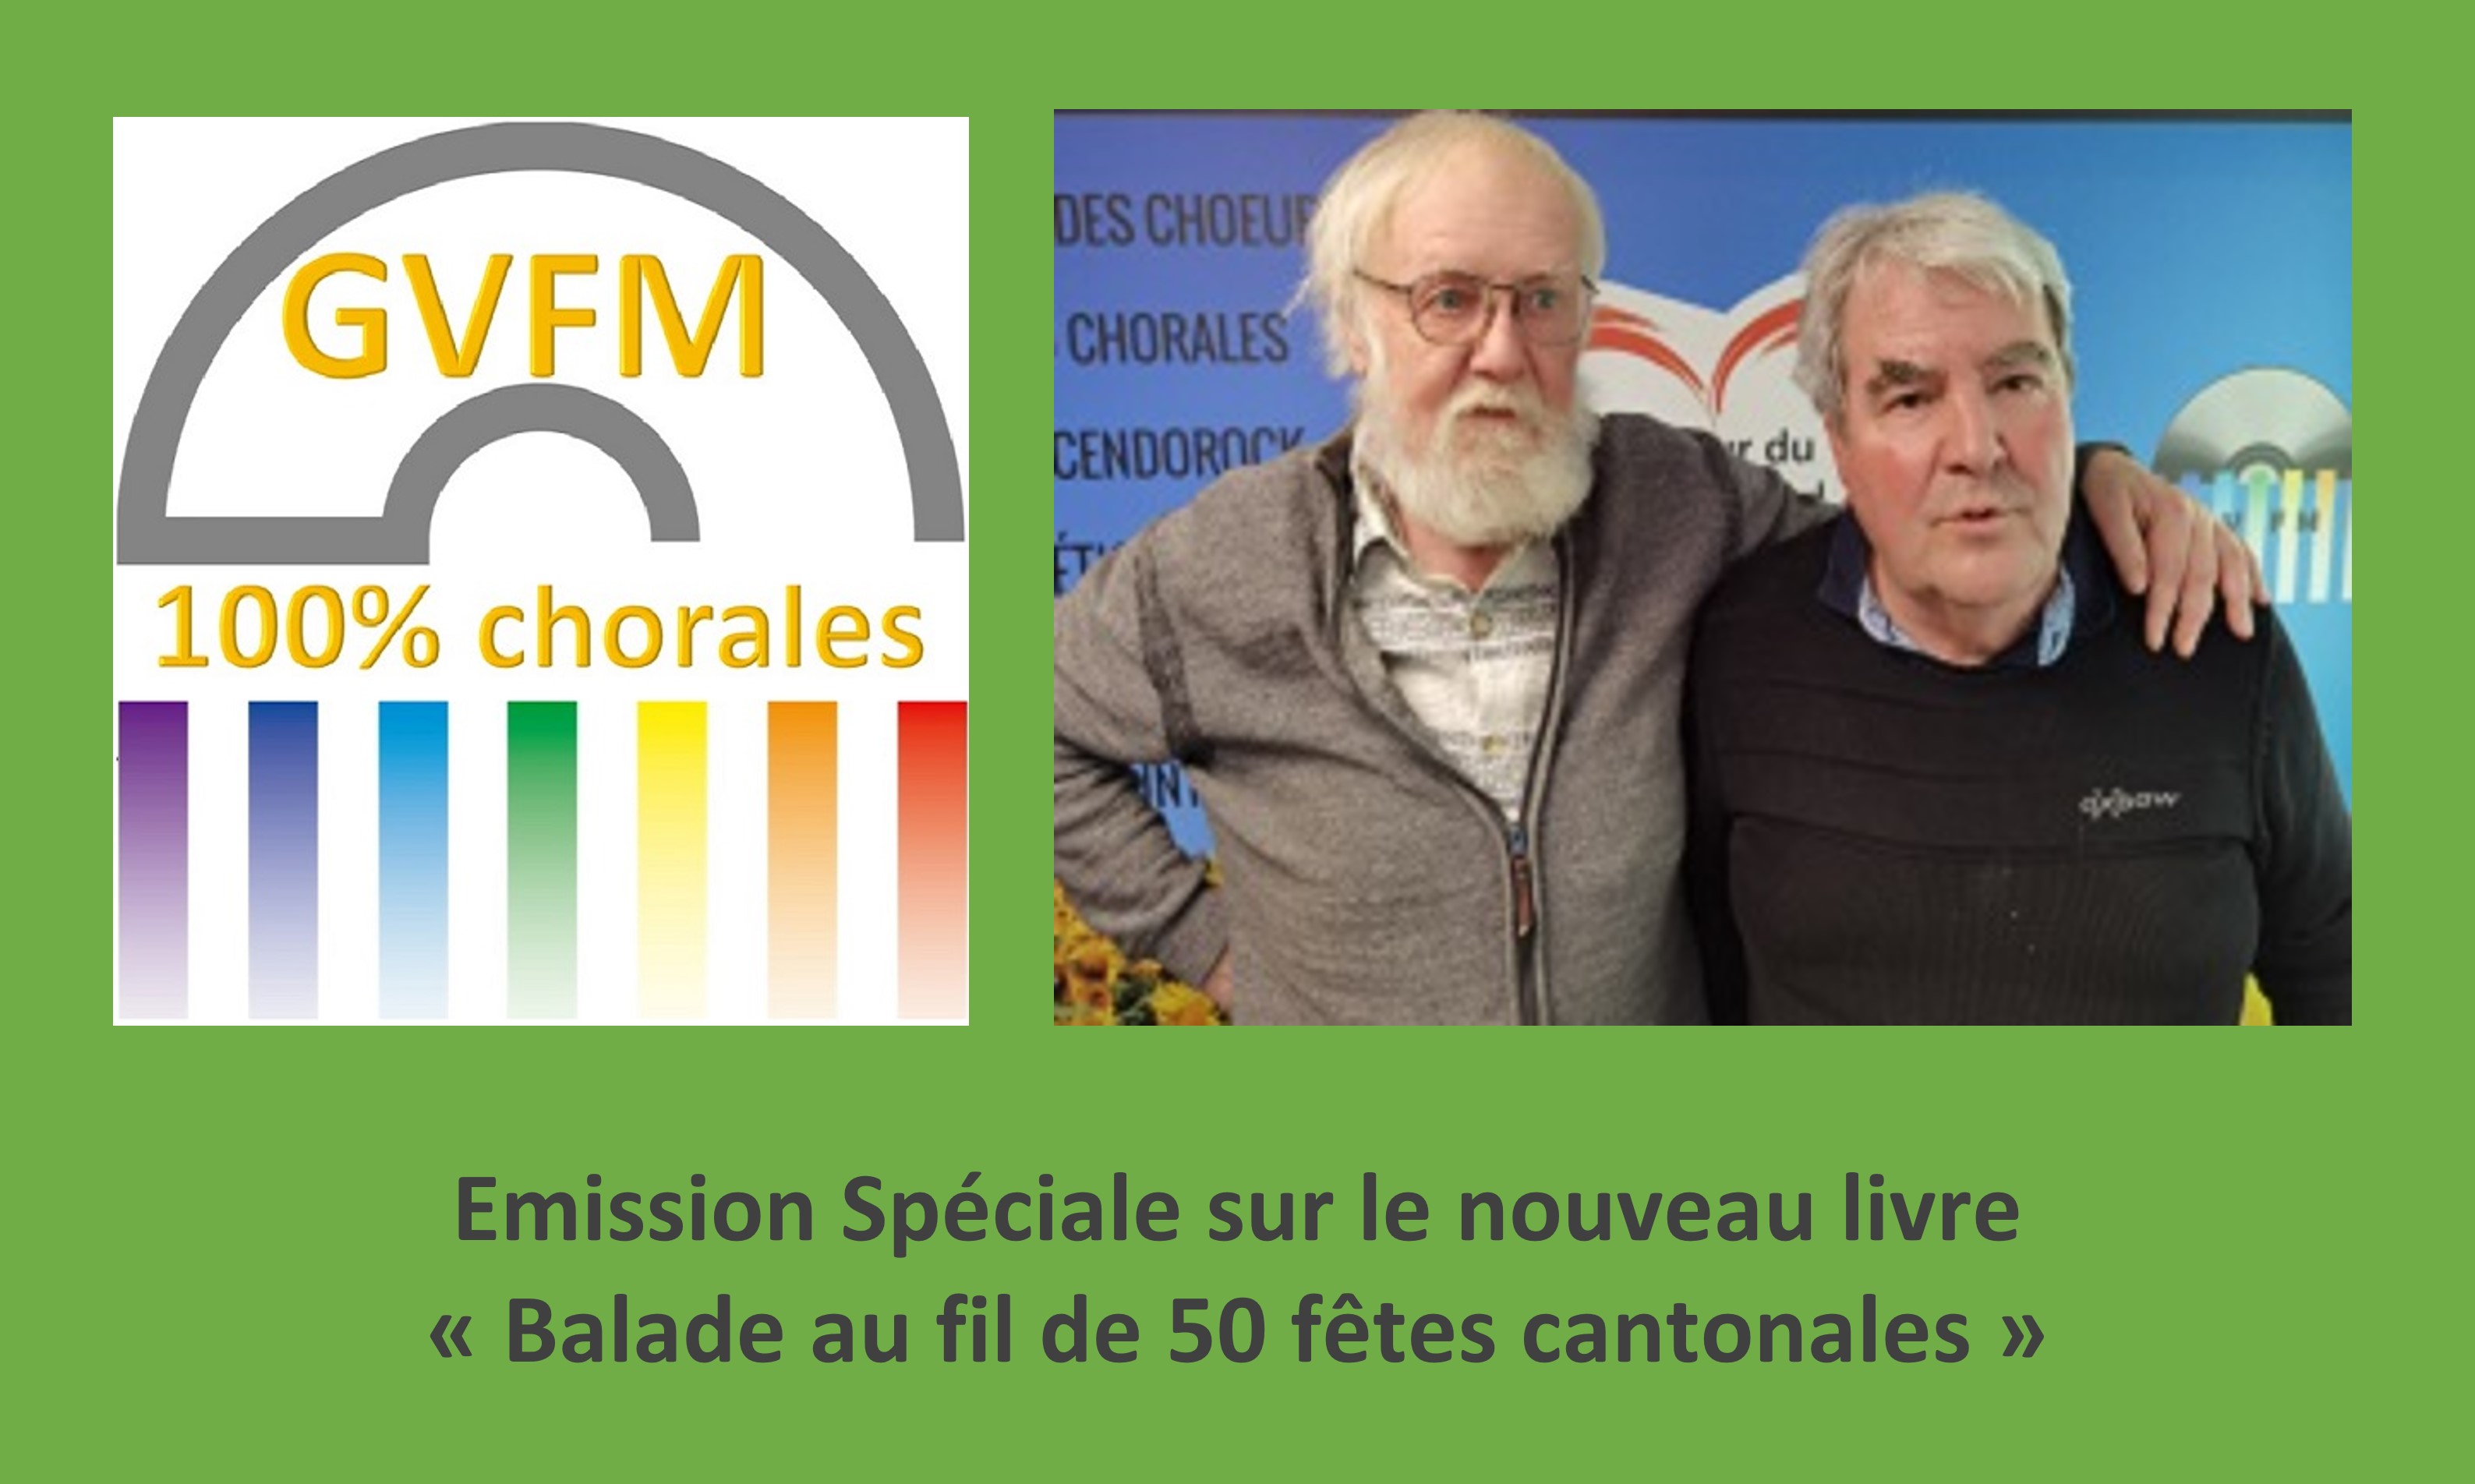 Emission Spéciale sur GVFM 
Alain Devalloné et Bernard Dutruy